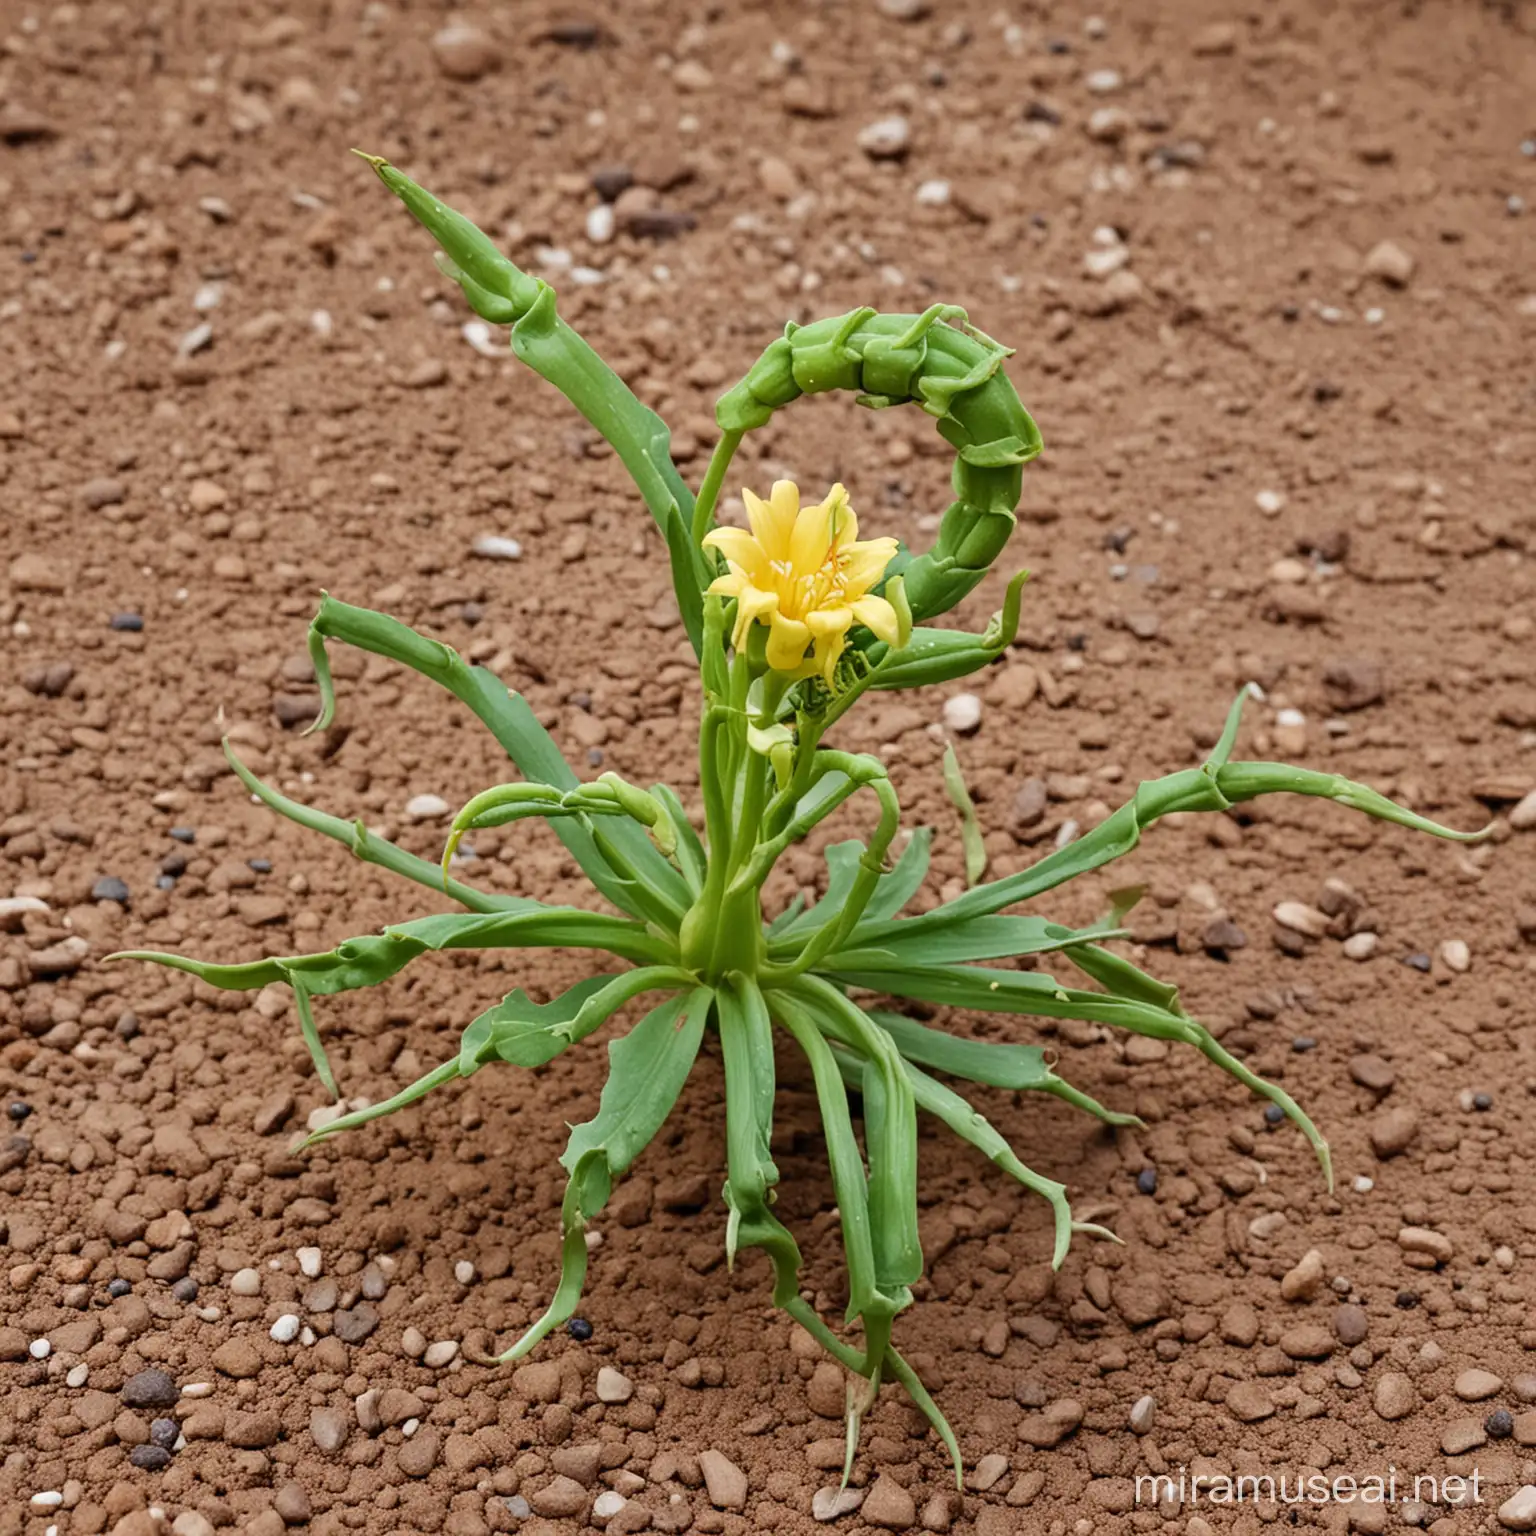 Vibrant Scorpion Flower Blossoming in Desert Oasis